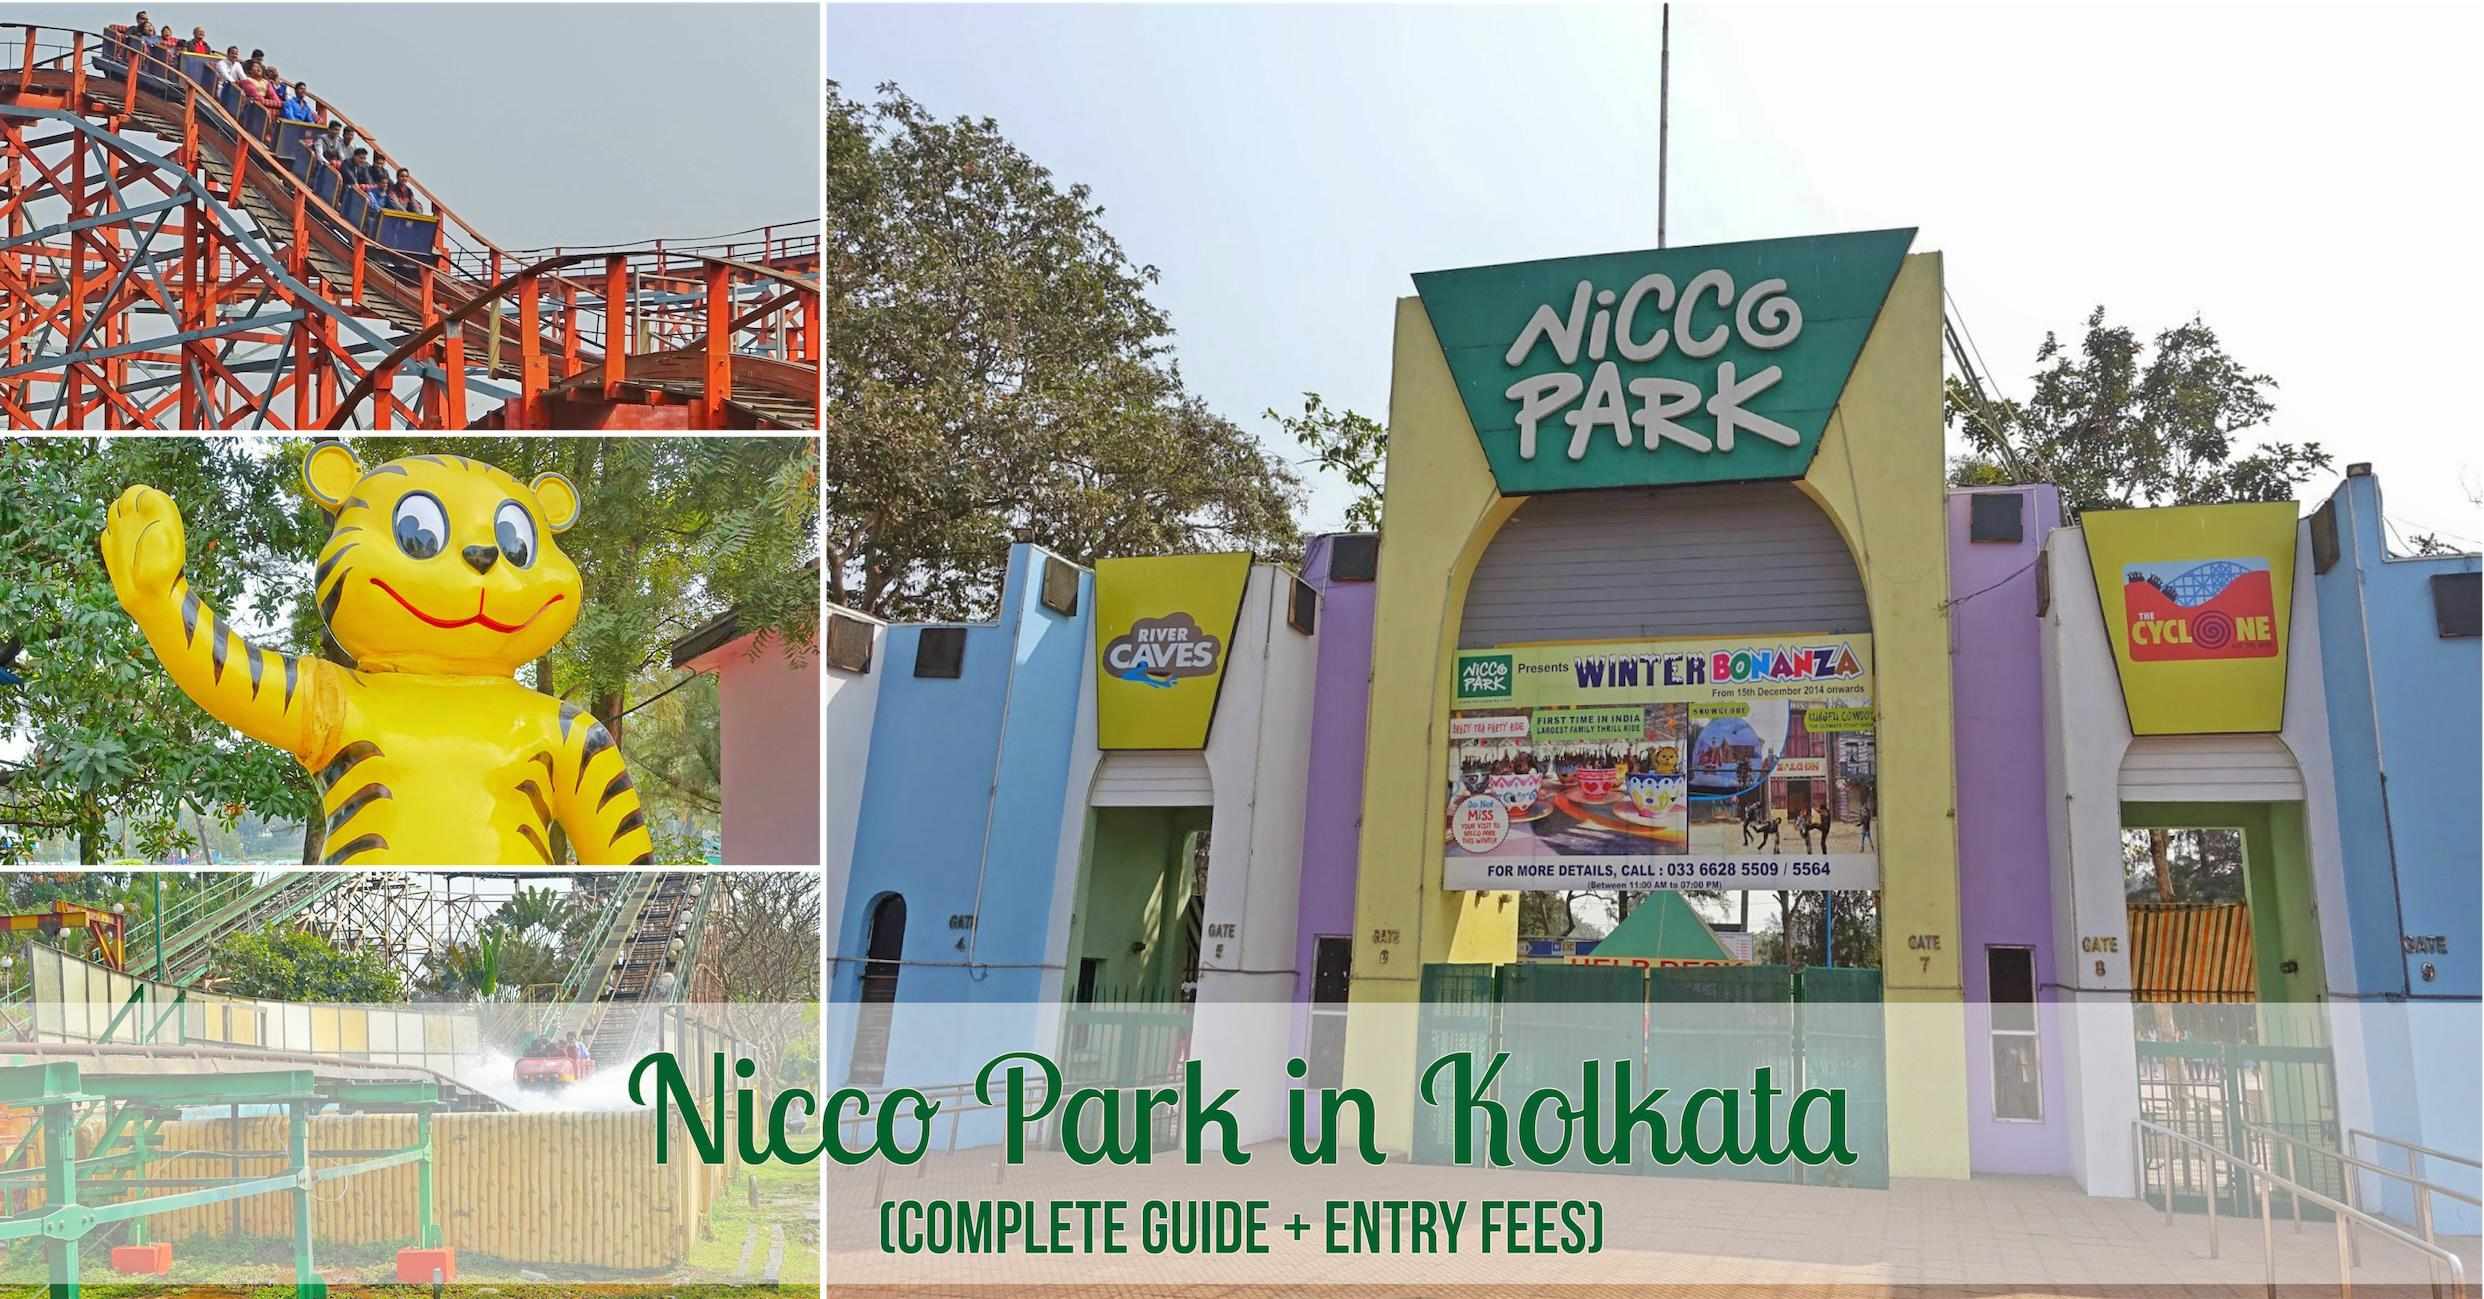 Nicco-park-Kolkata.jpg